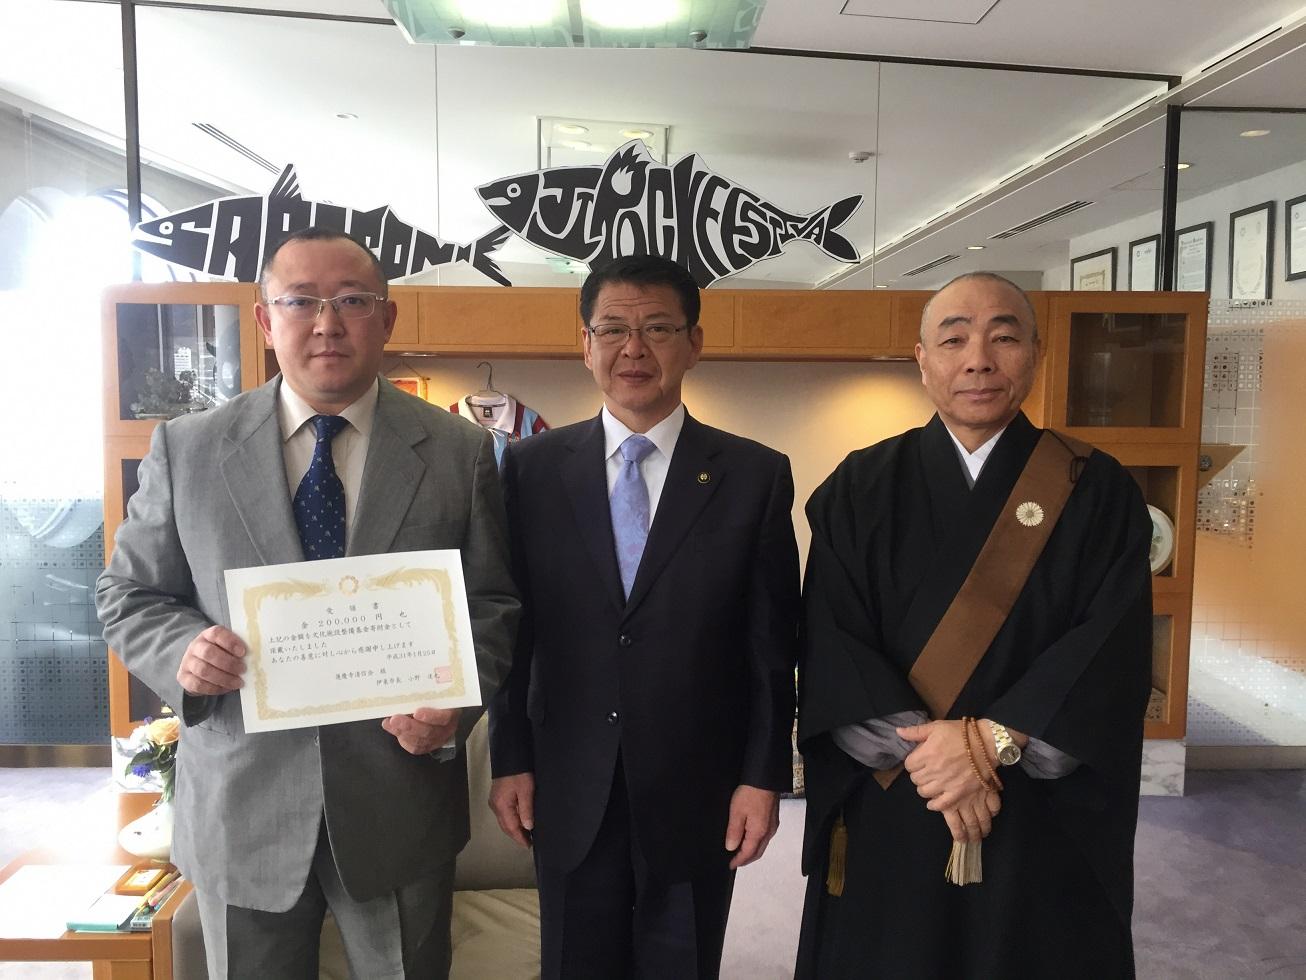 2019年1月25日受領書を掲げる川奈蓮慶寺の2人と並ぶ市長の写真